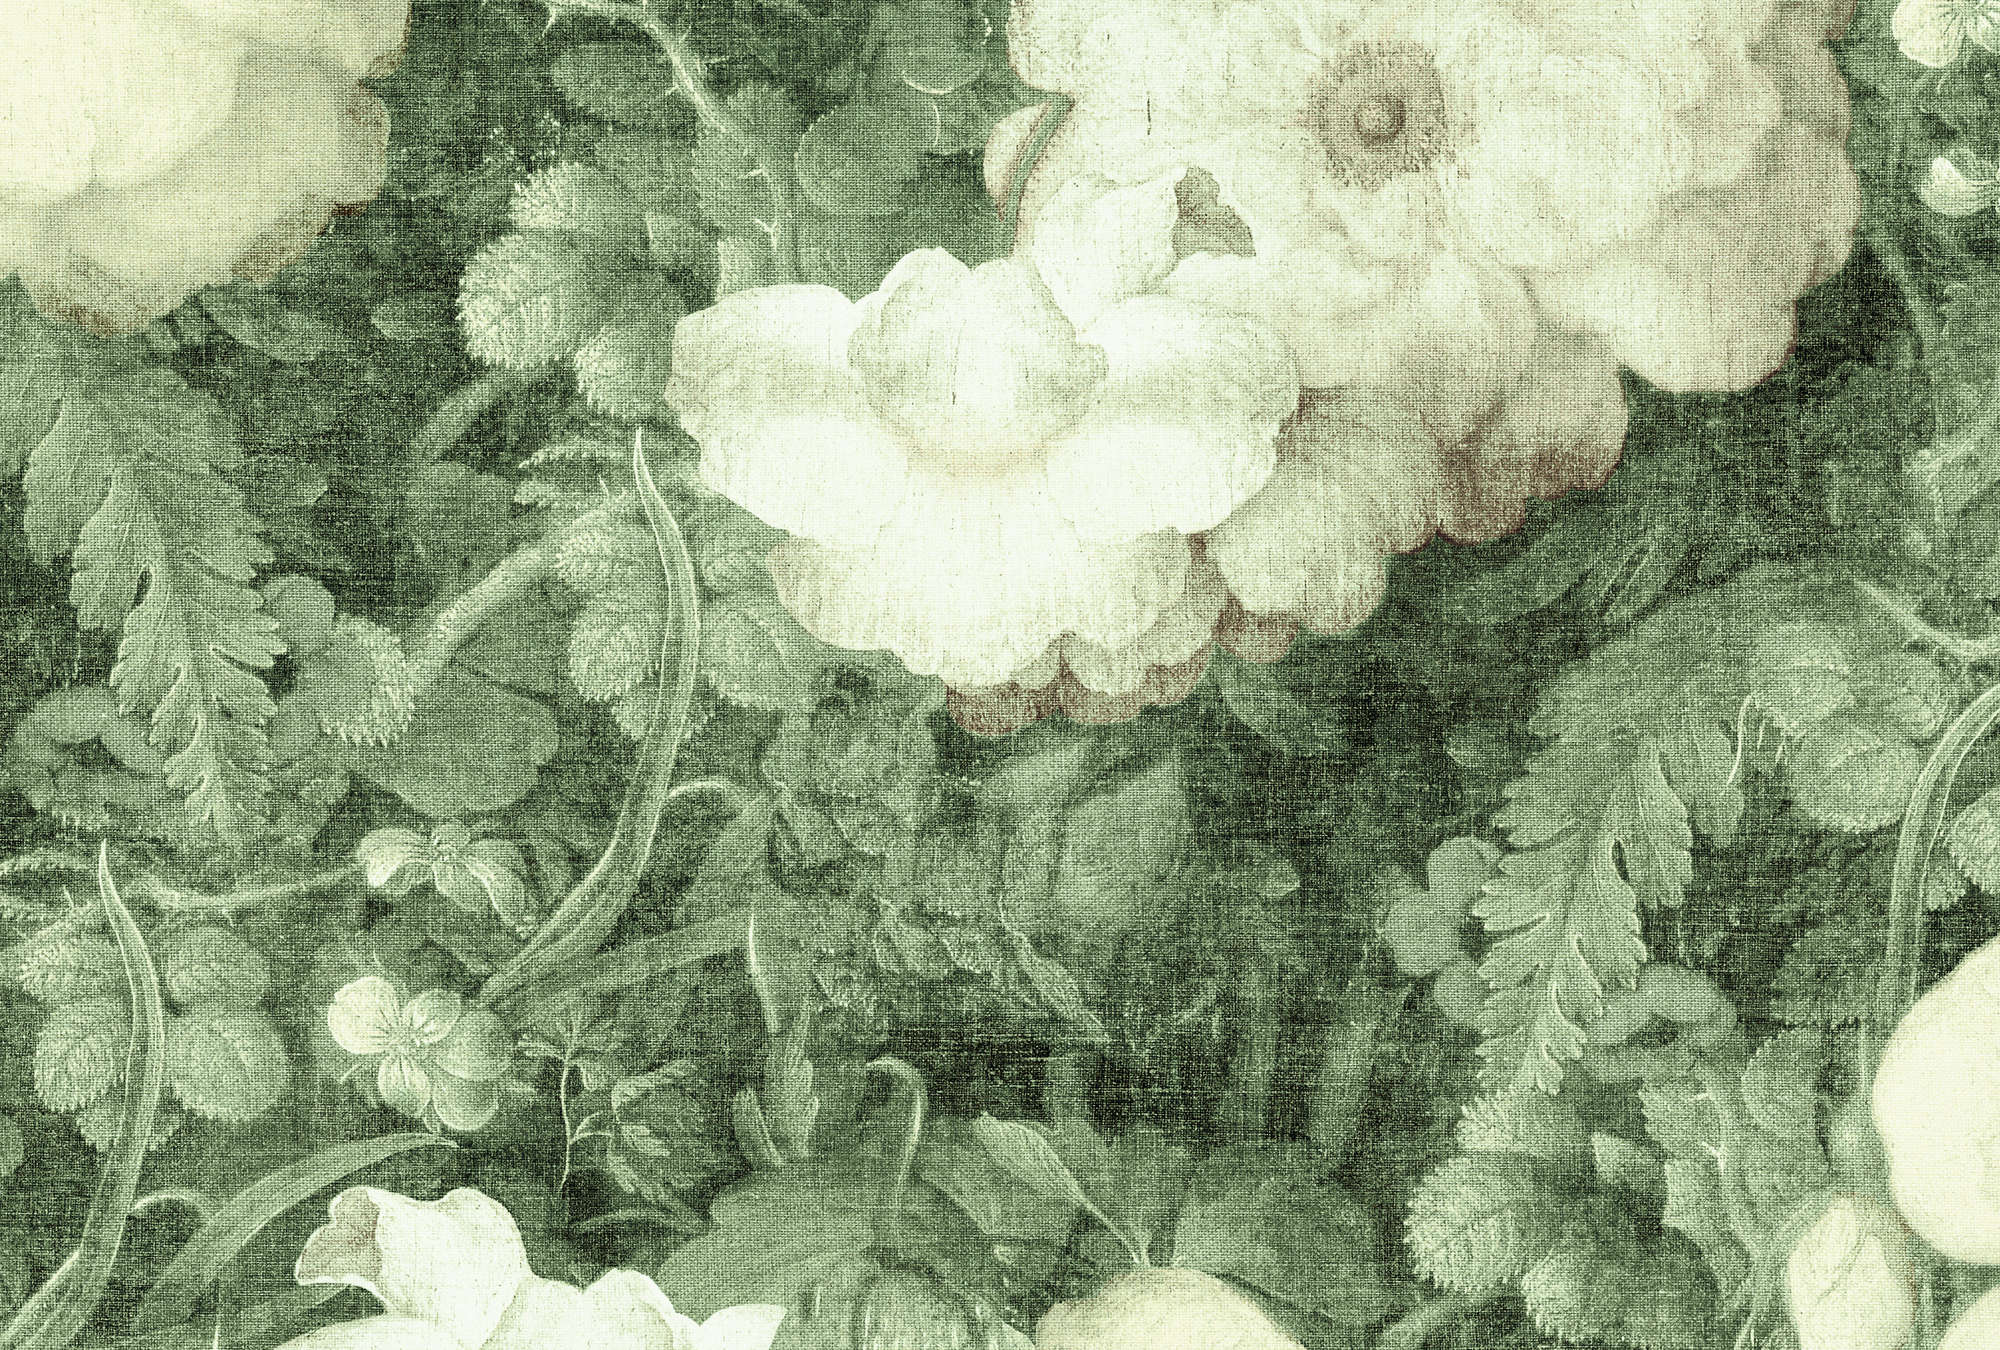             Bloemen Behang Schilderij & Natuurlijke Linnen Look - Groen, Wit
        